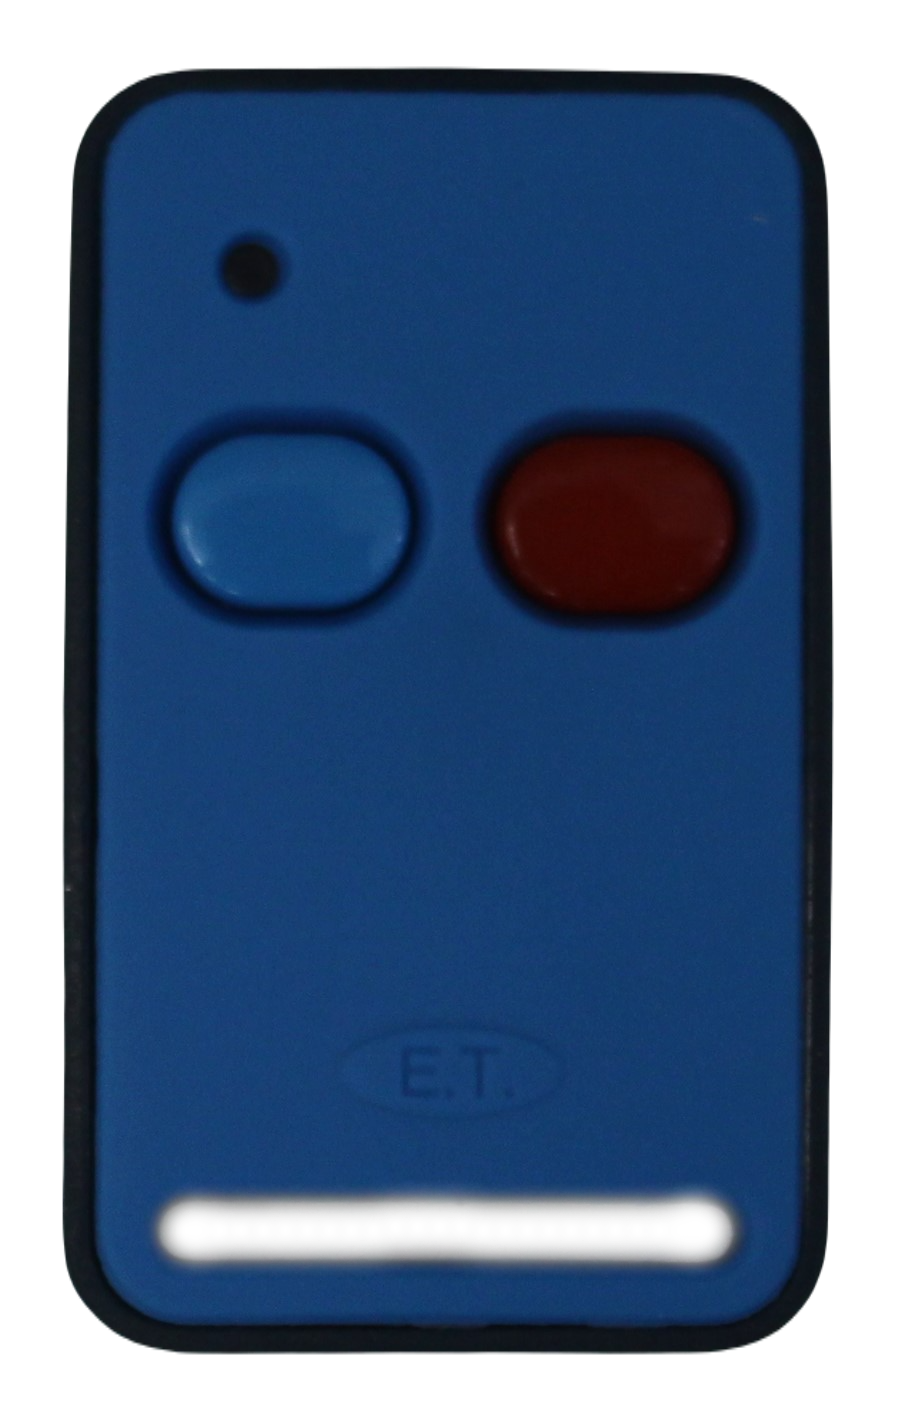 et-remote-2-button-remote